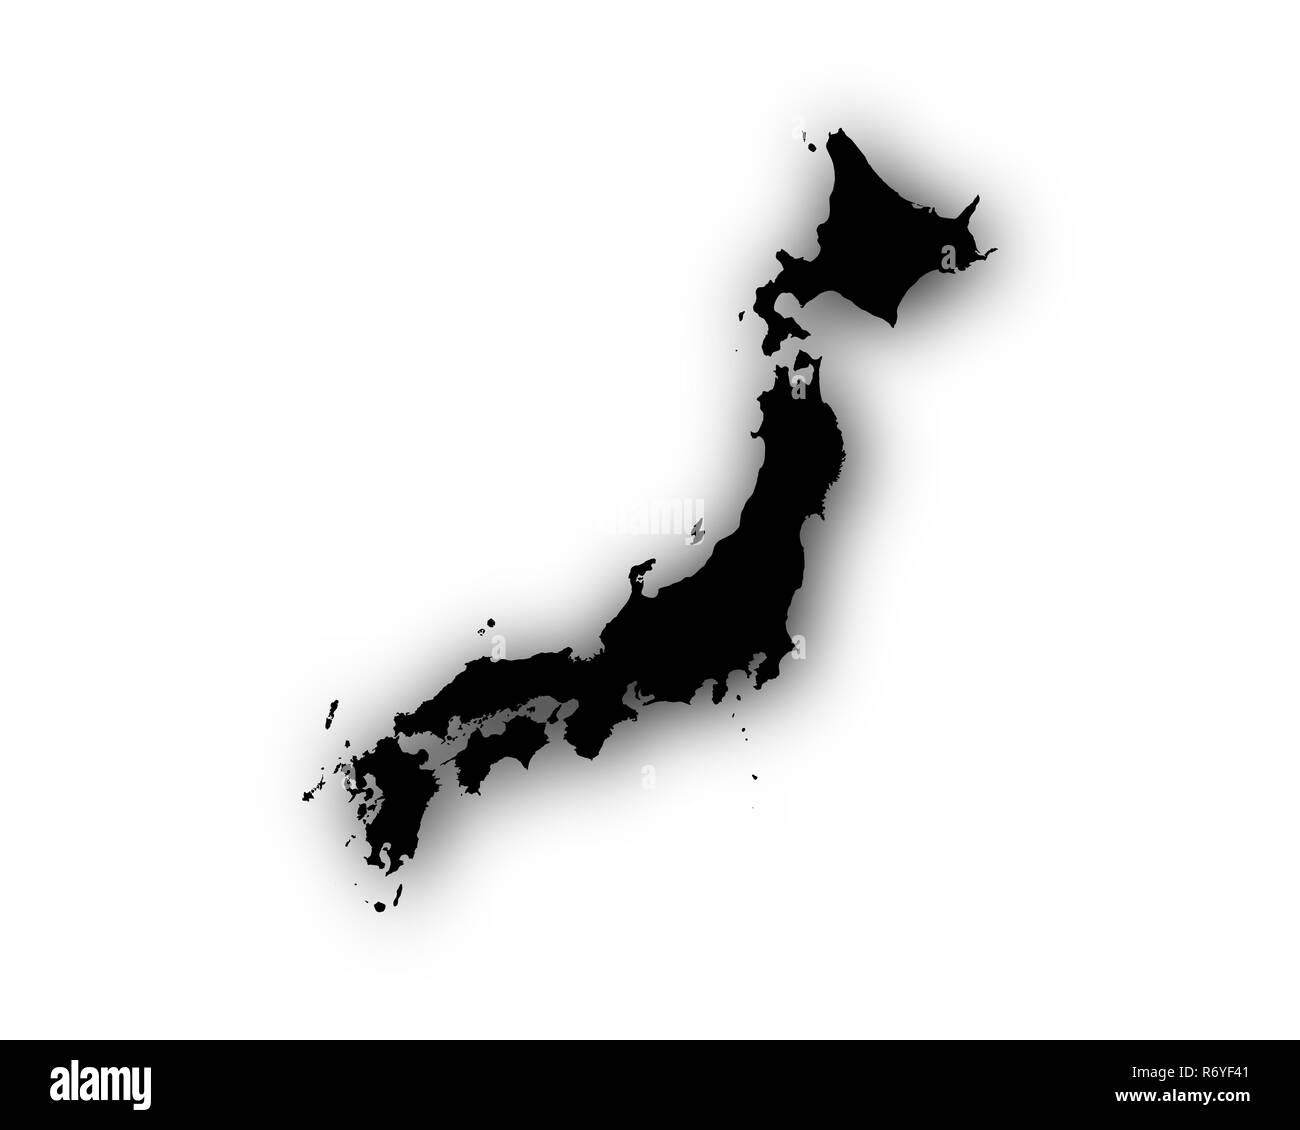 La carte du japon avec ombre Photo Stock - Alamy